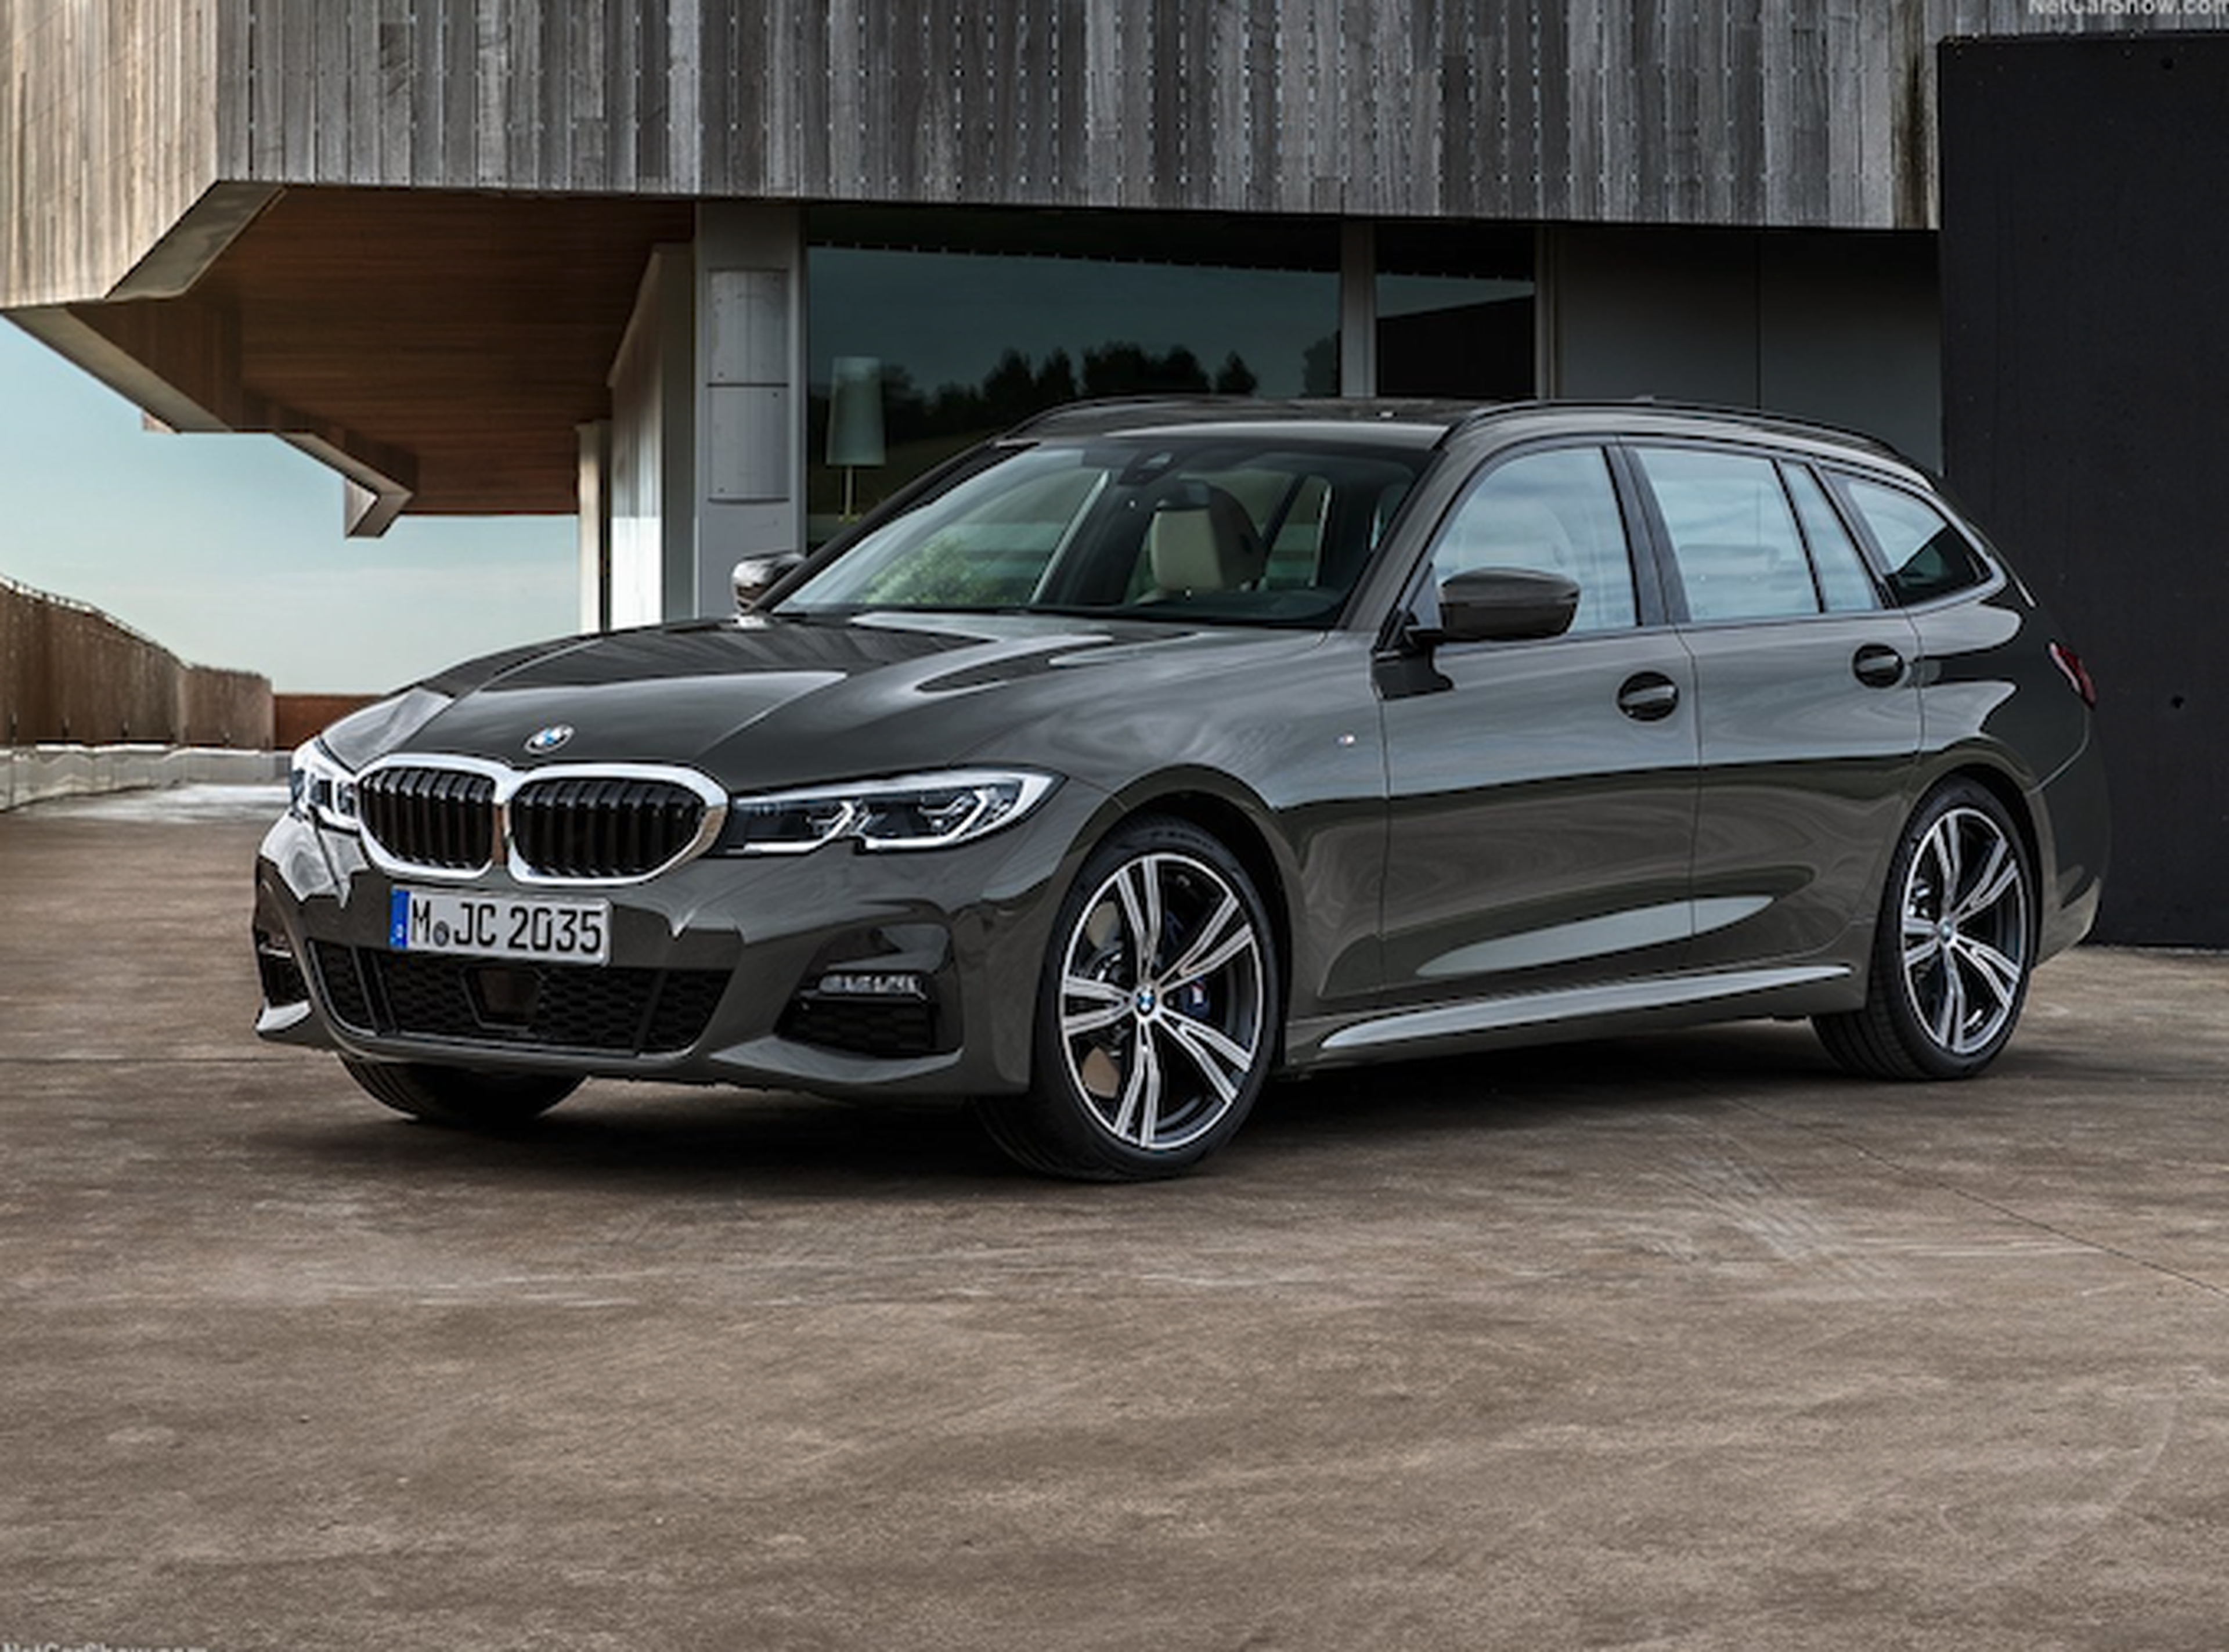 VÍDEO: Así es el BMW Serie 3 Touring 2019, detalle a detalle